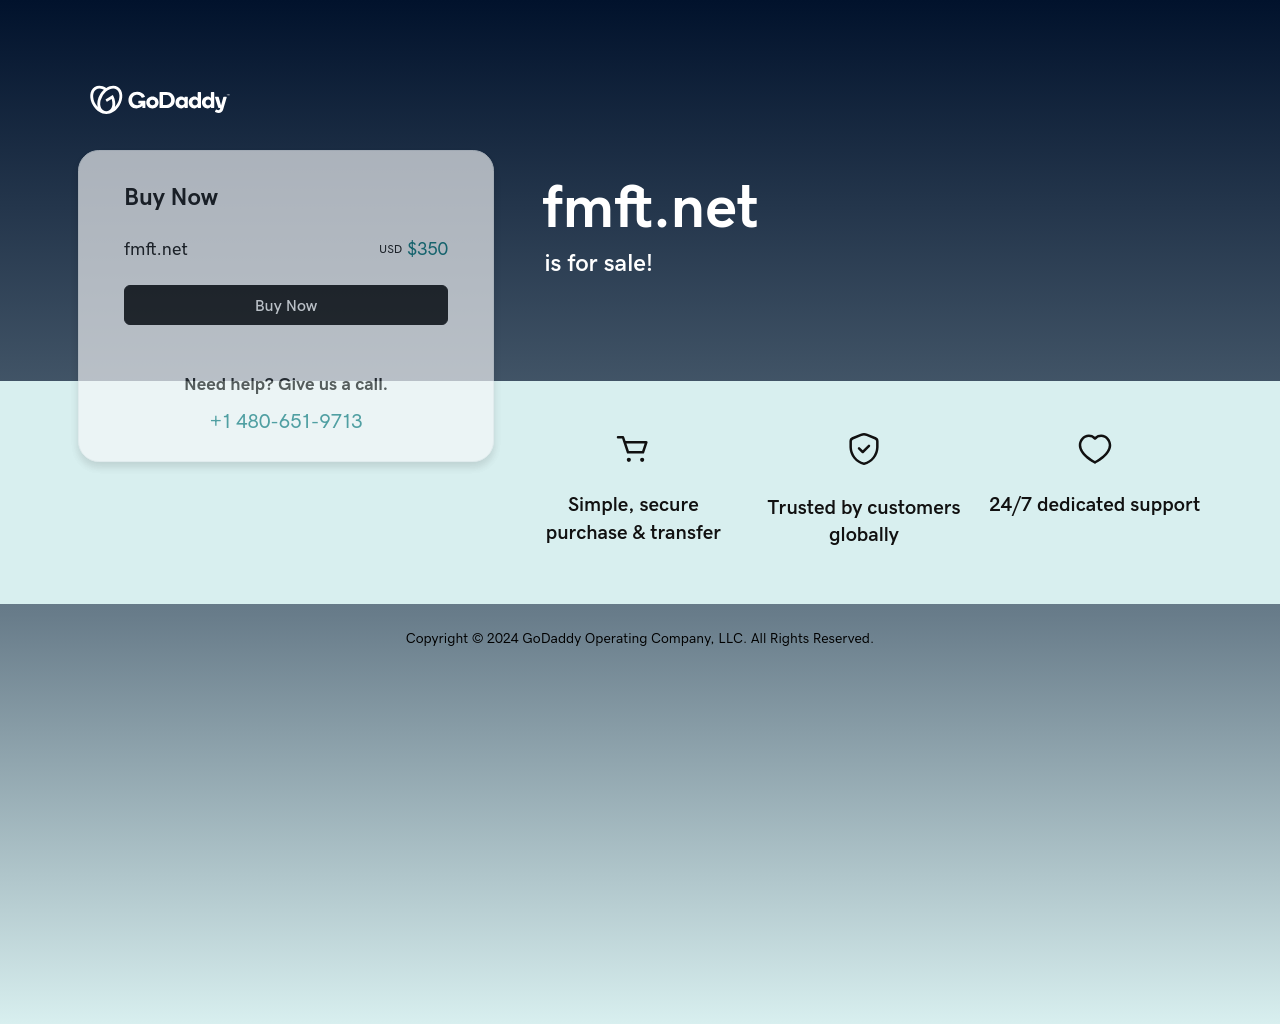 fmft.net